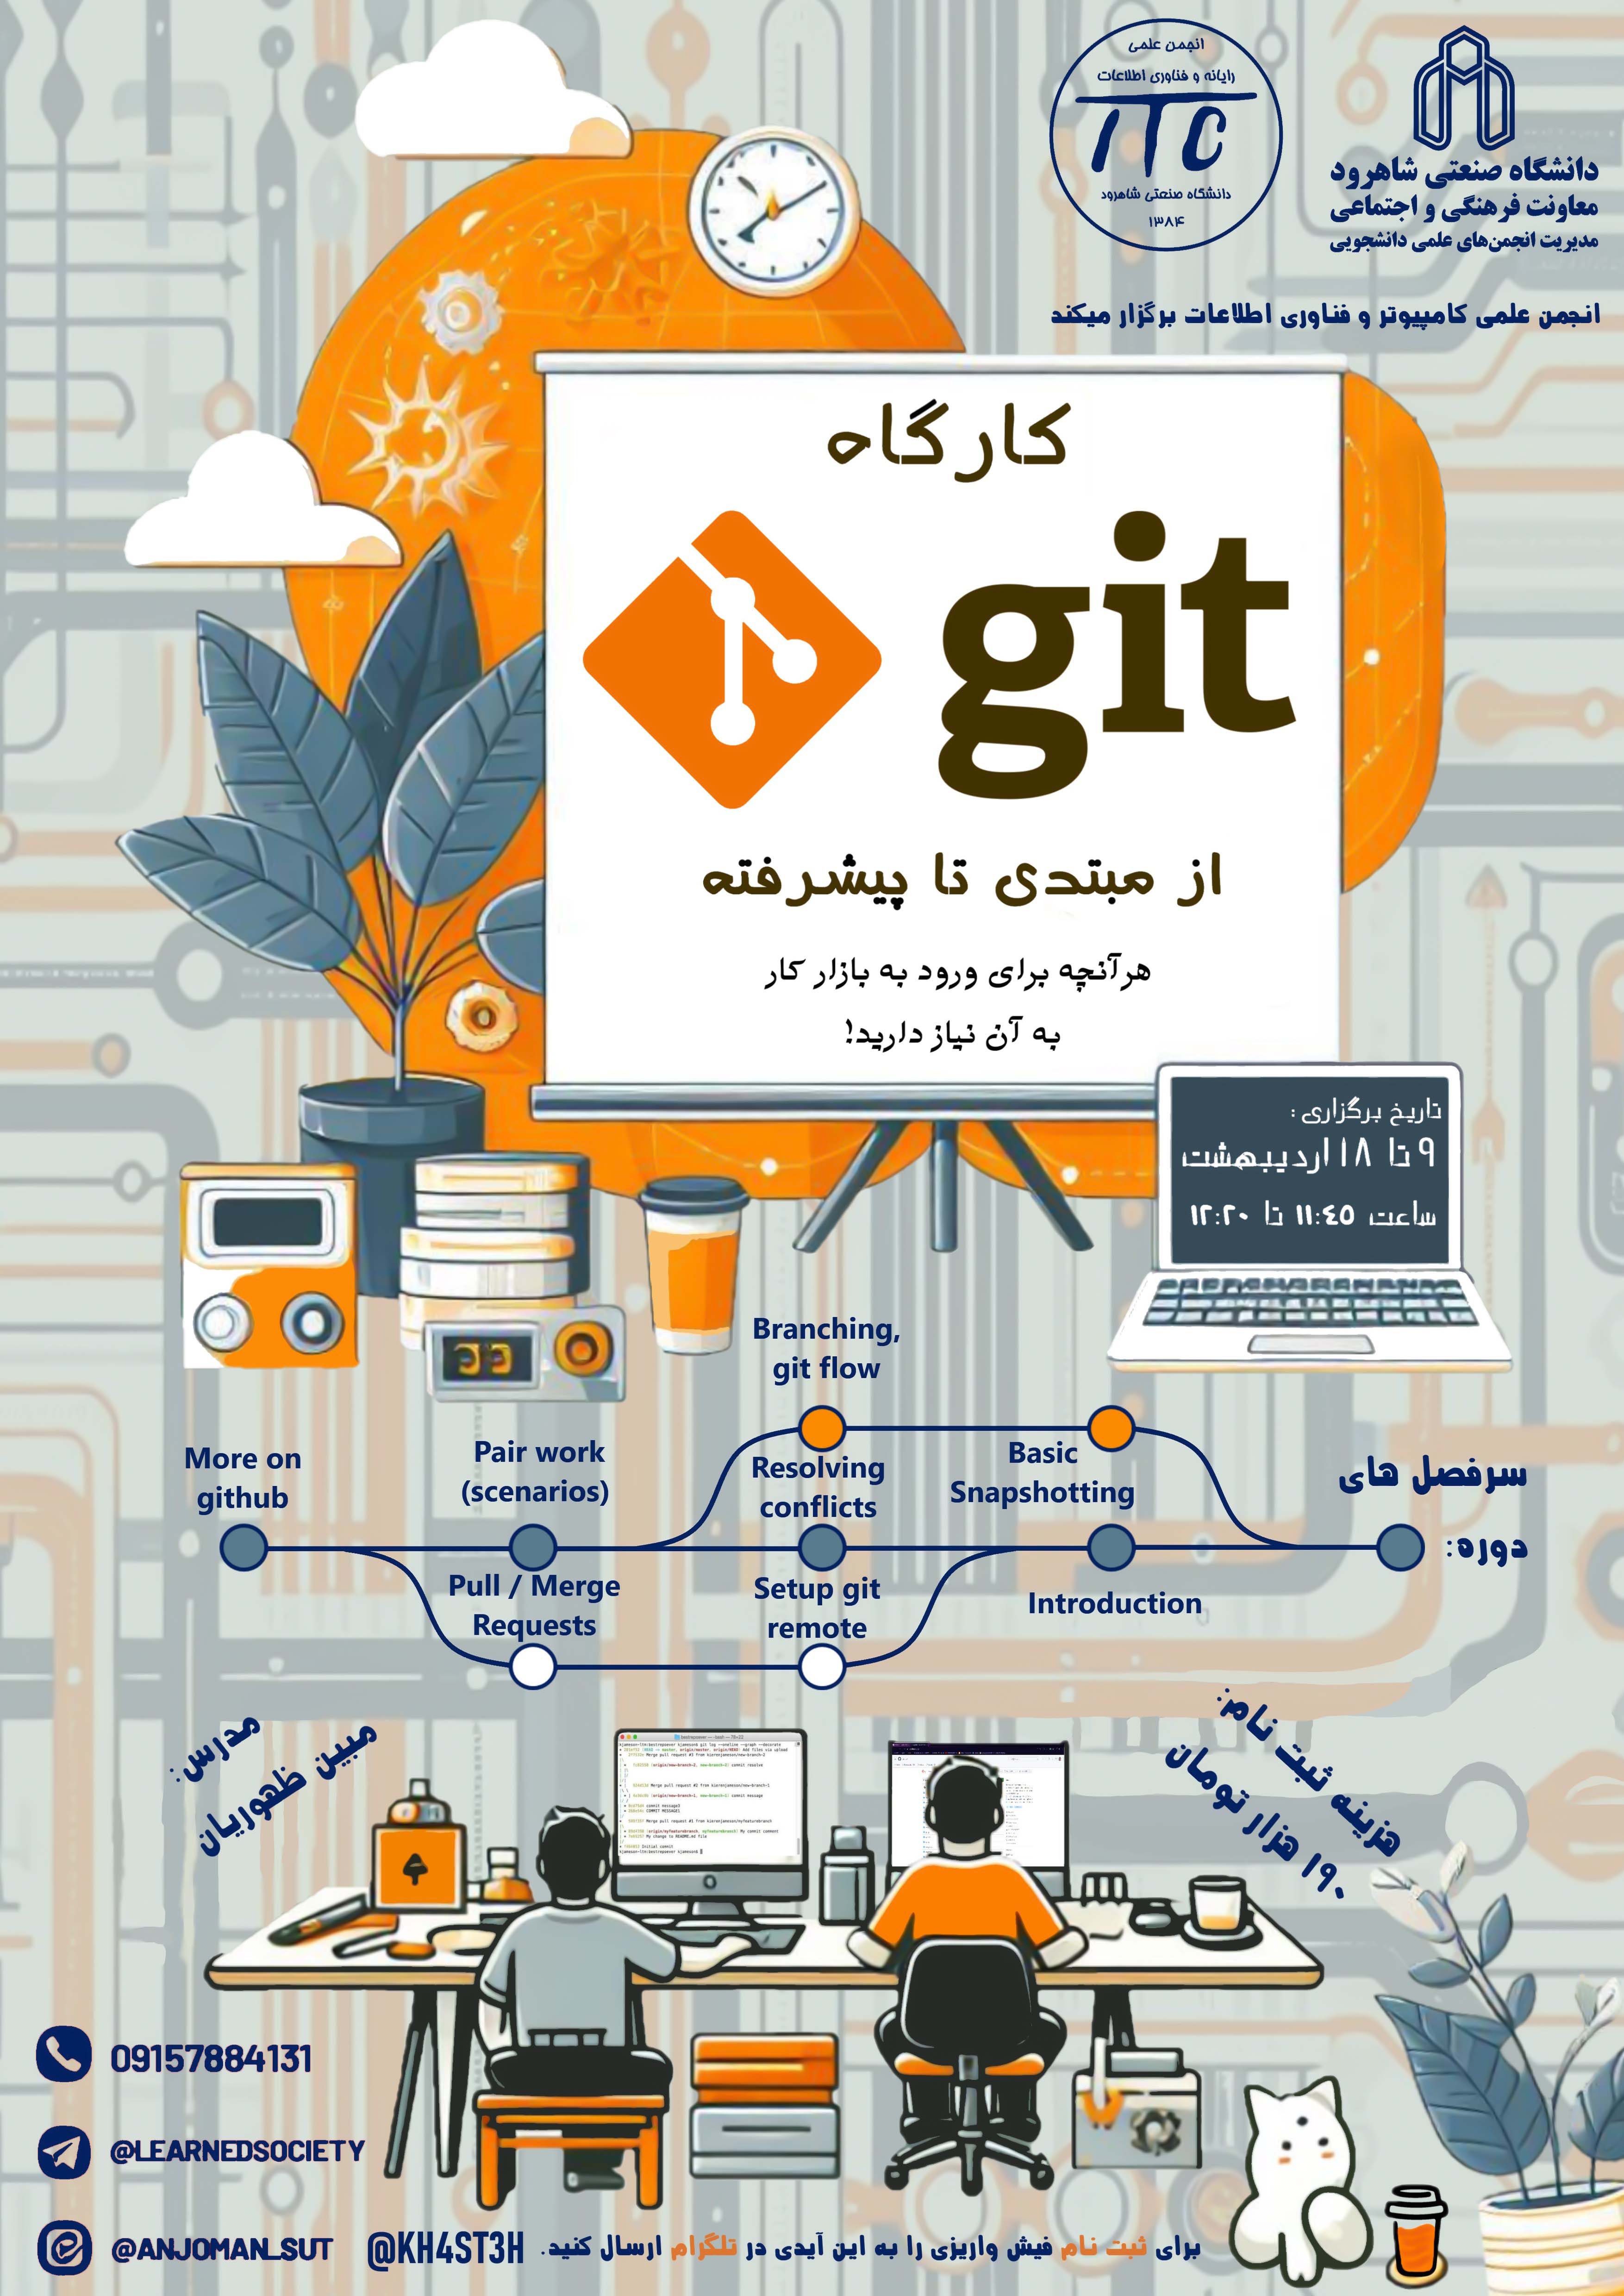 14030208 کارگاه Git از مبتدی تا پیشرفته